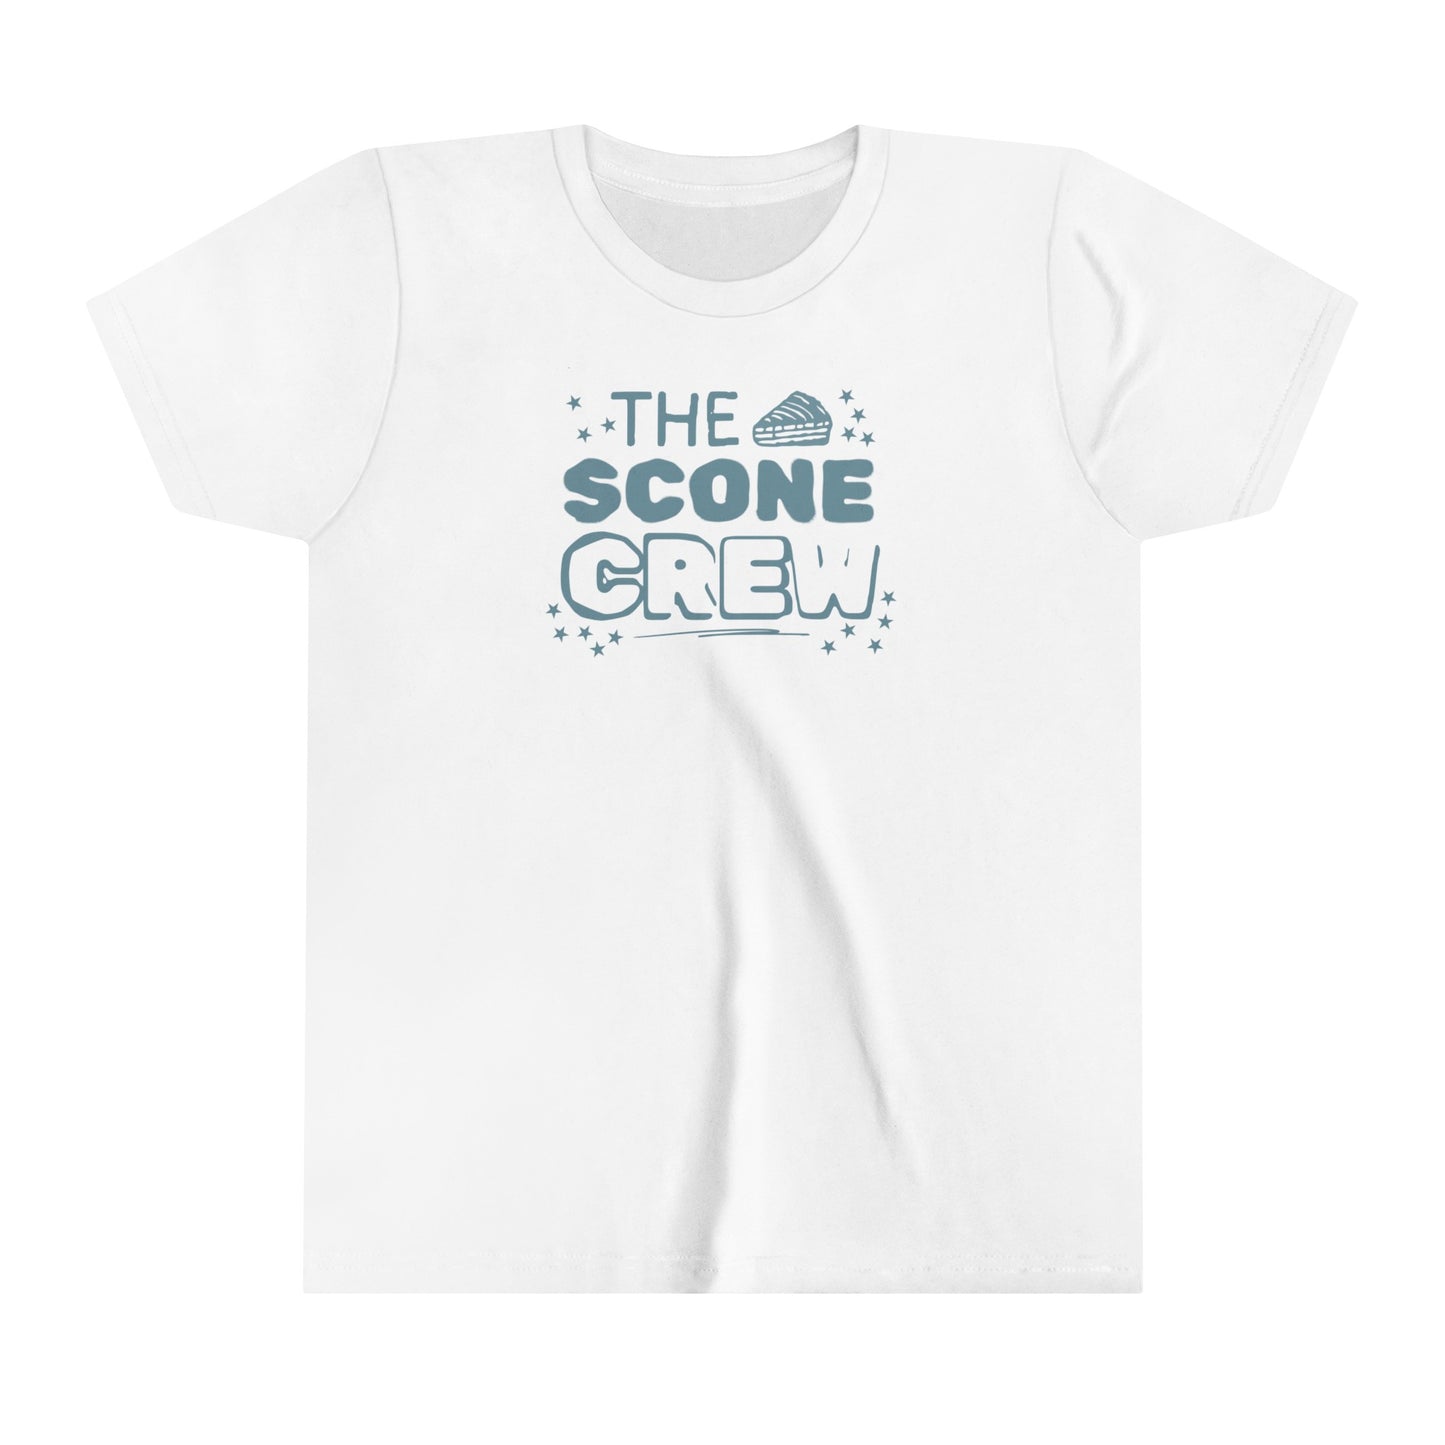 The Scone Crew Kids' T-Shirt